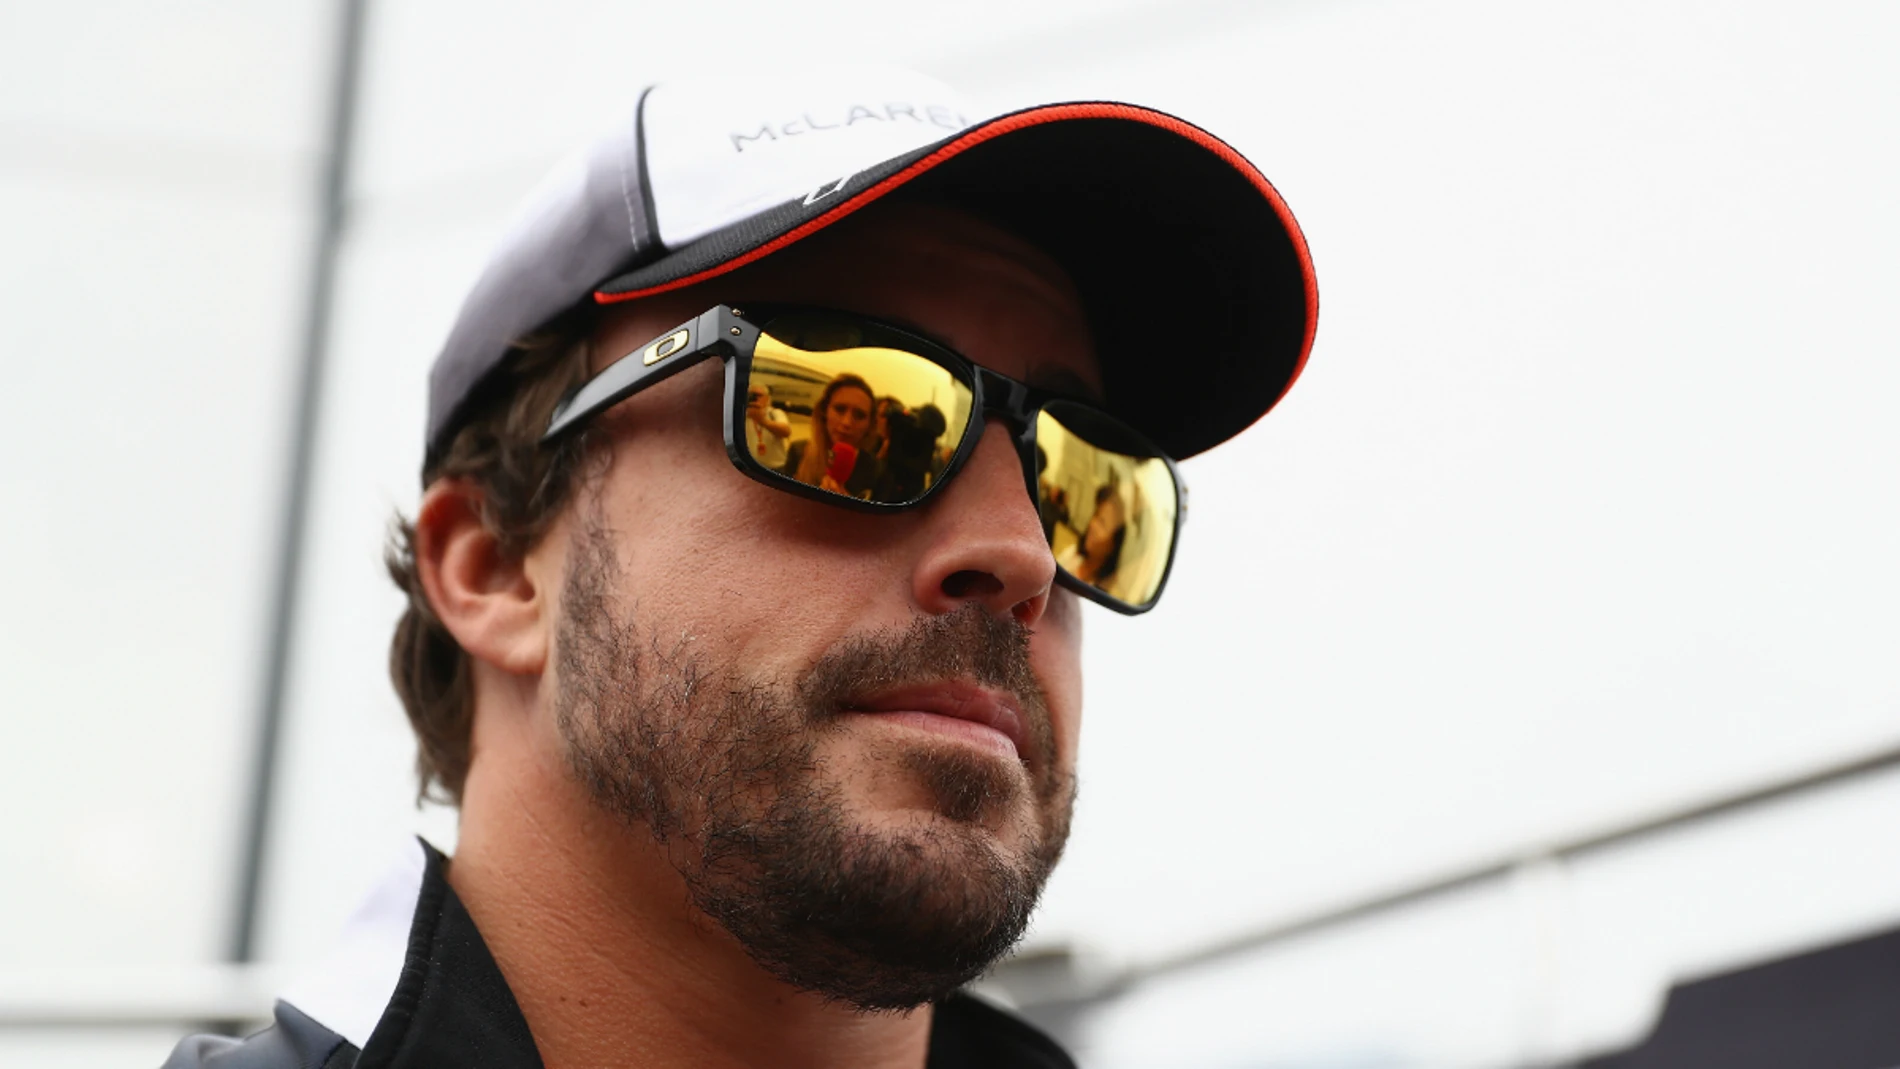 Alonso, en Silverstone